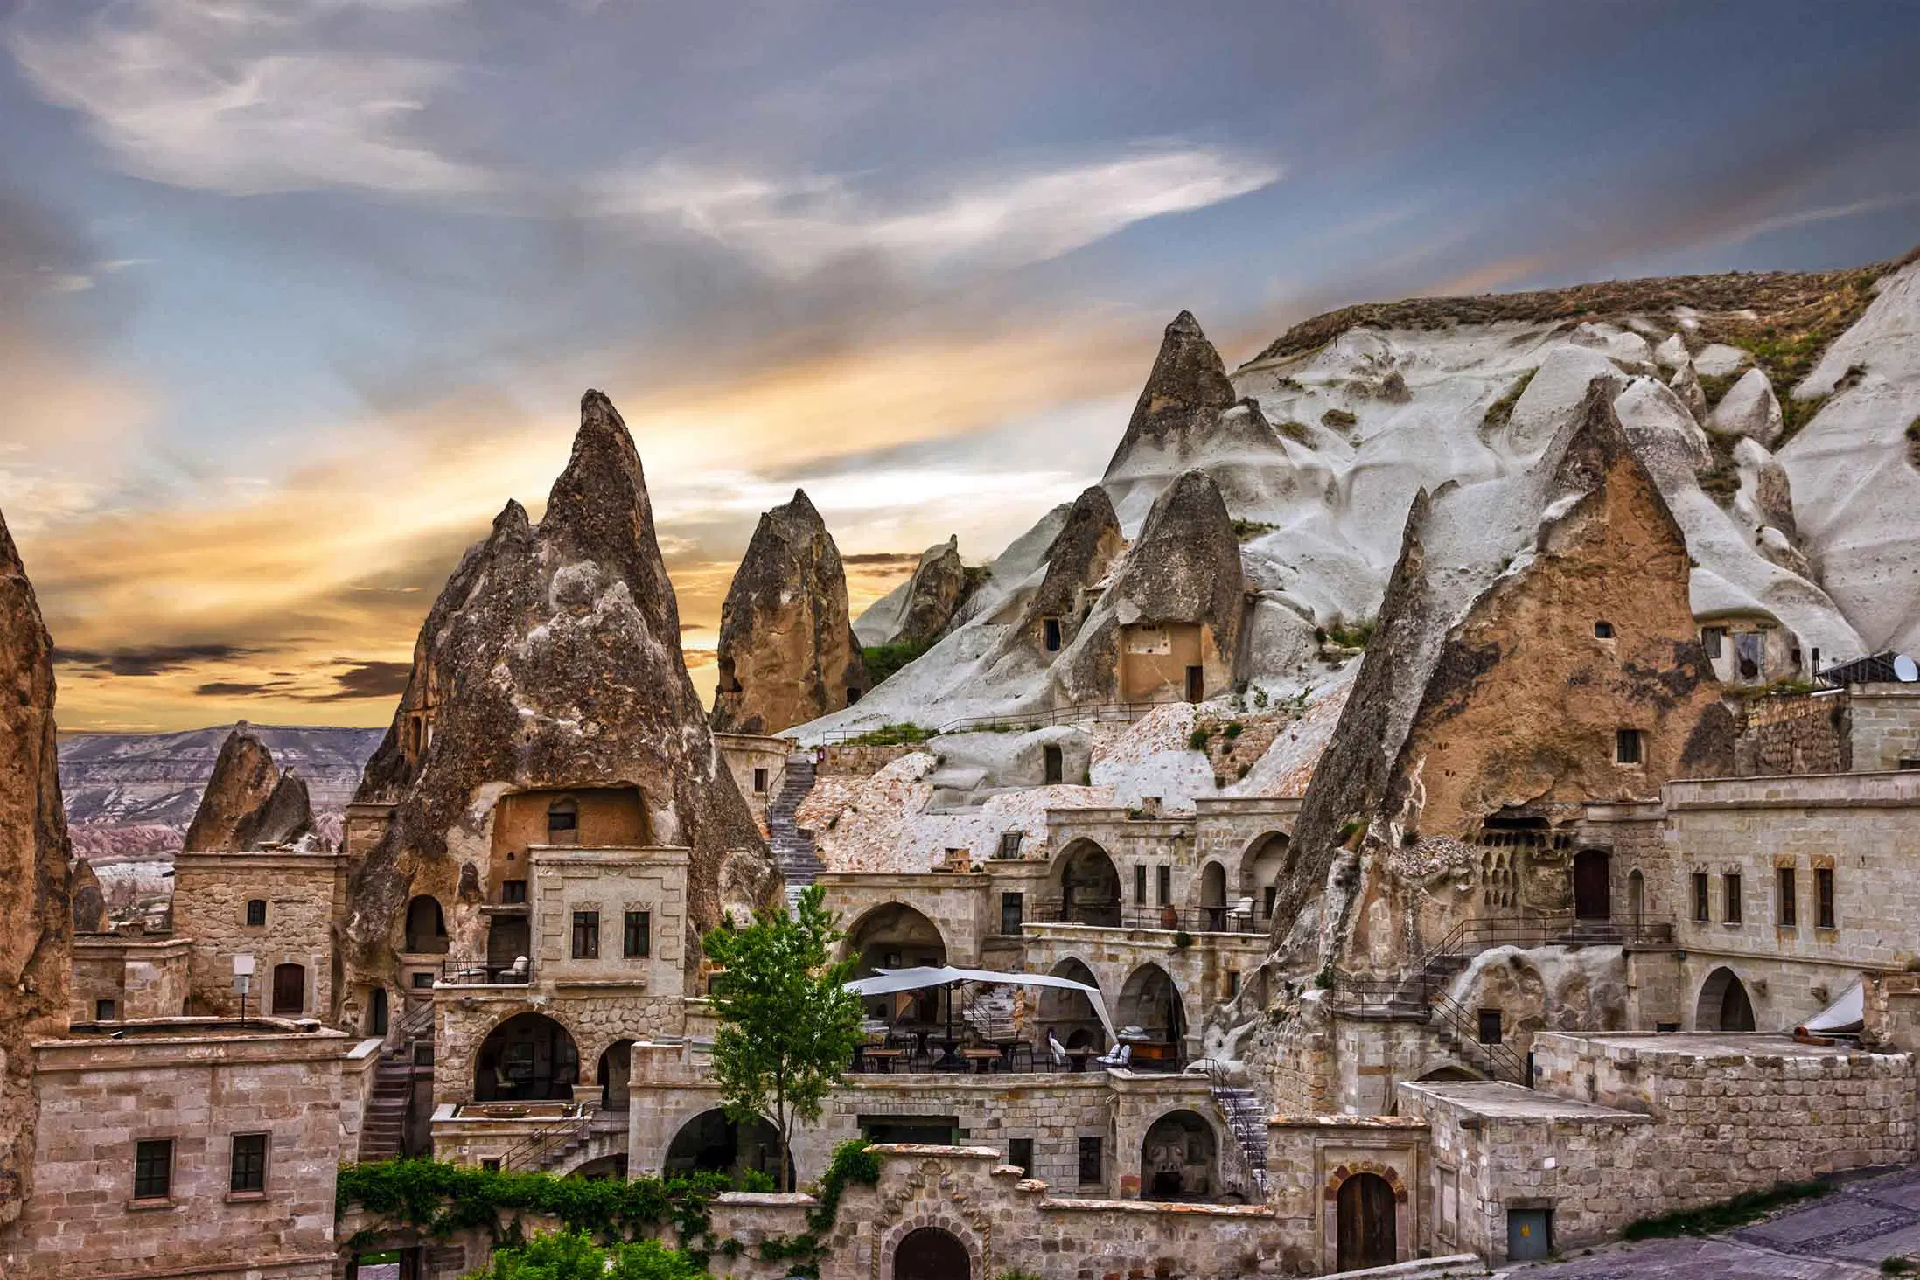 Turkey 07-Days Istanbul, Cappadocia & Ephesus Tour